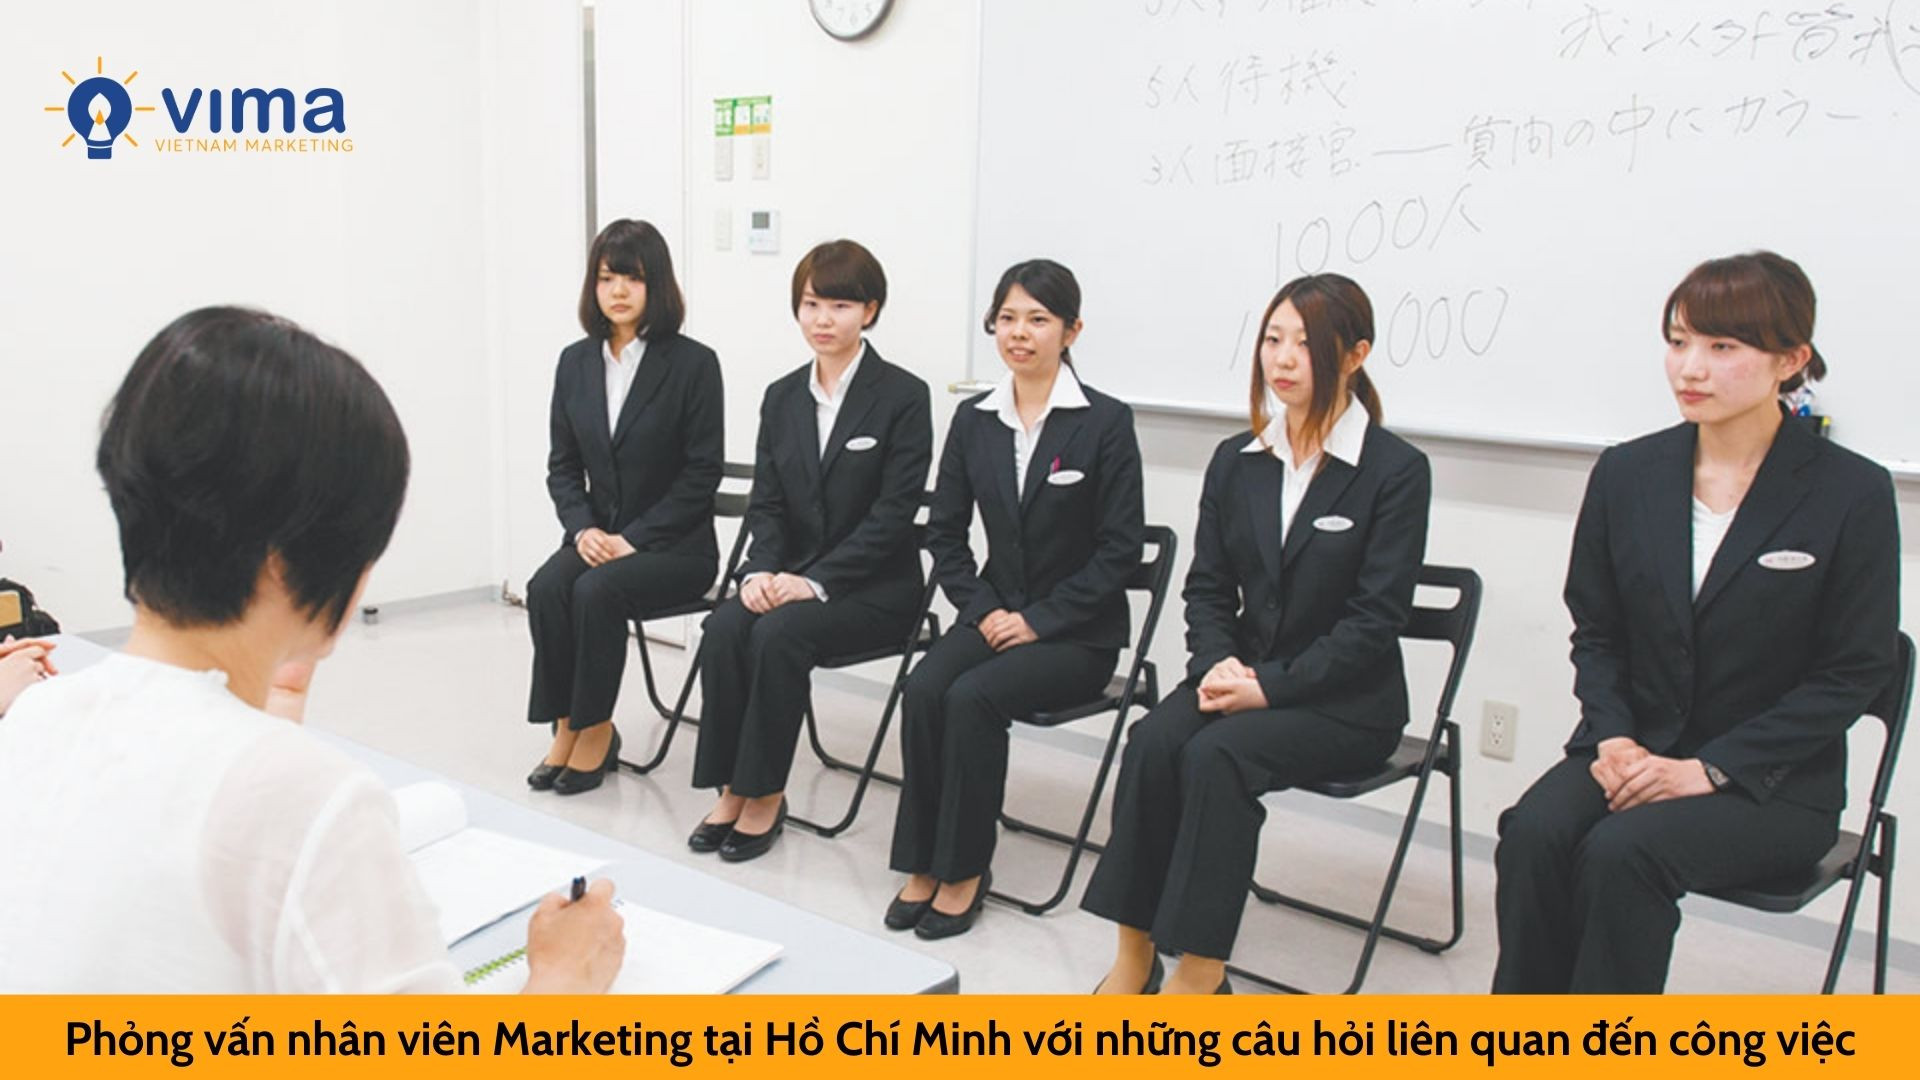 Phỏng vấn nhân viên Marketing tại Hồ Chí Minh với những câu hỏi liên quan đến công việc